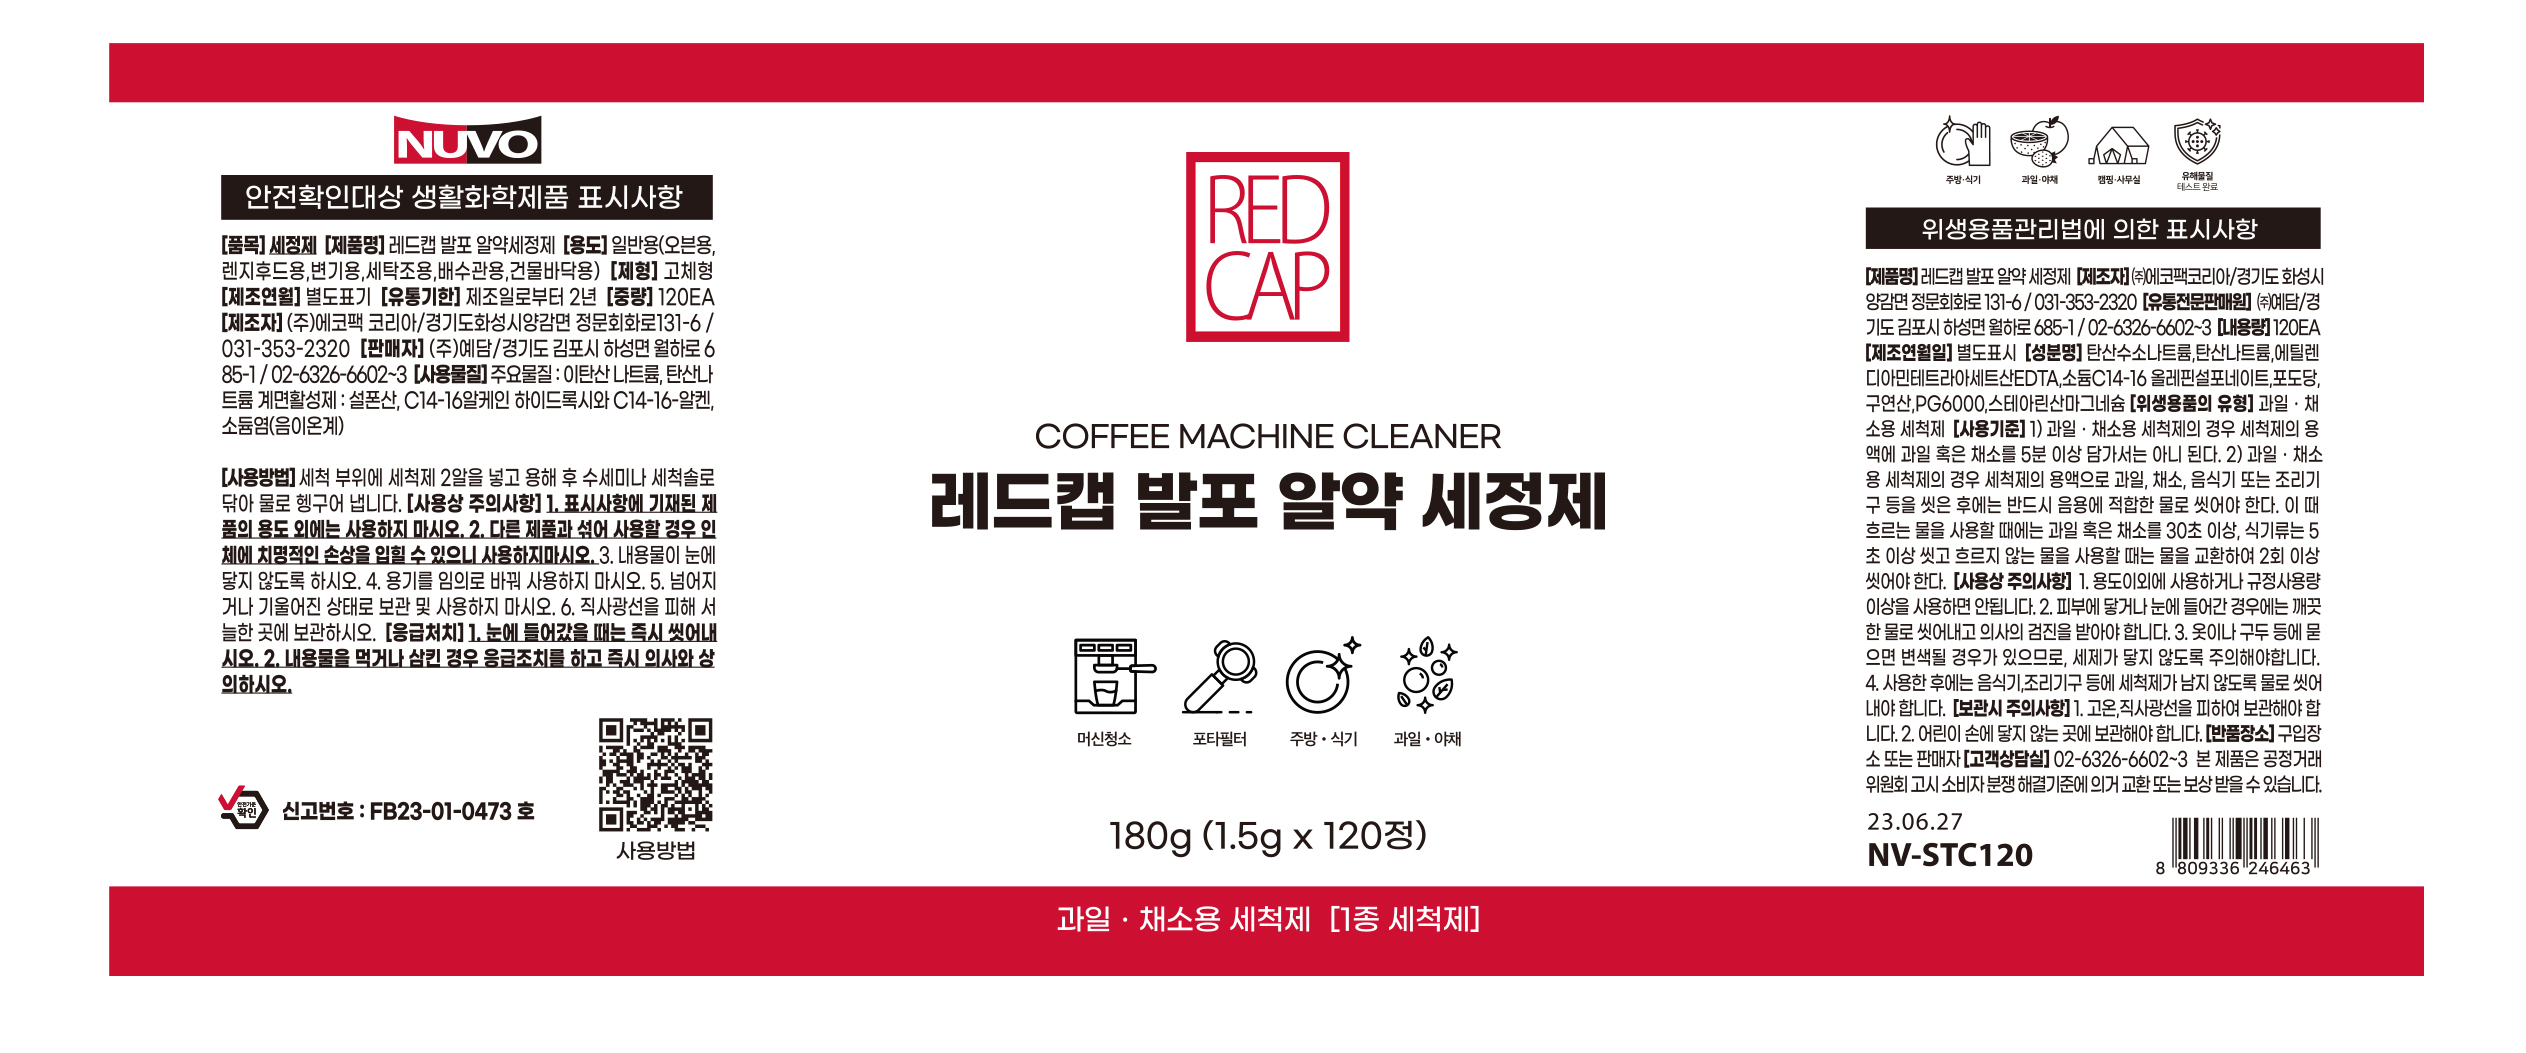 redcap-tablet-cleaner_170447.jpg